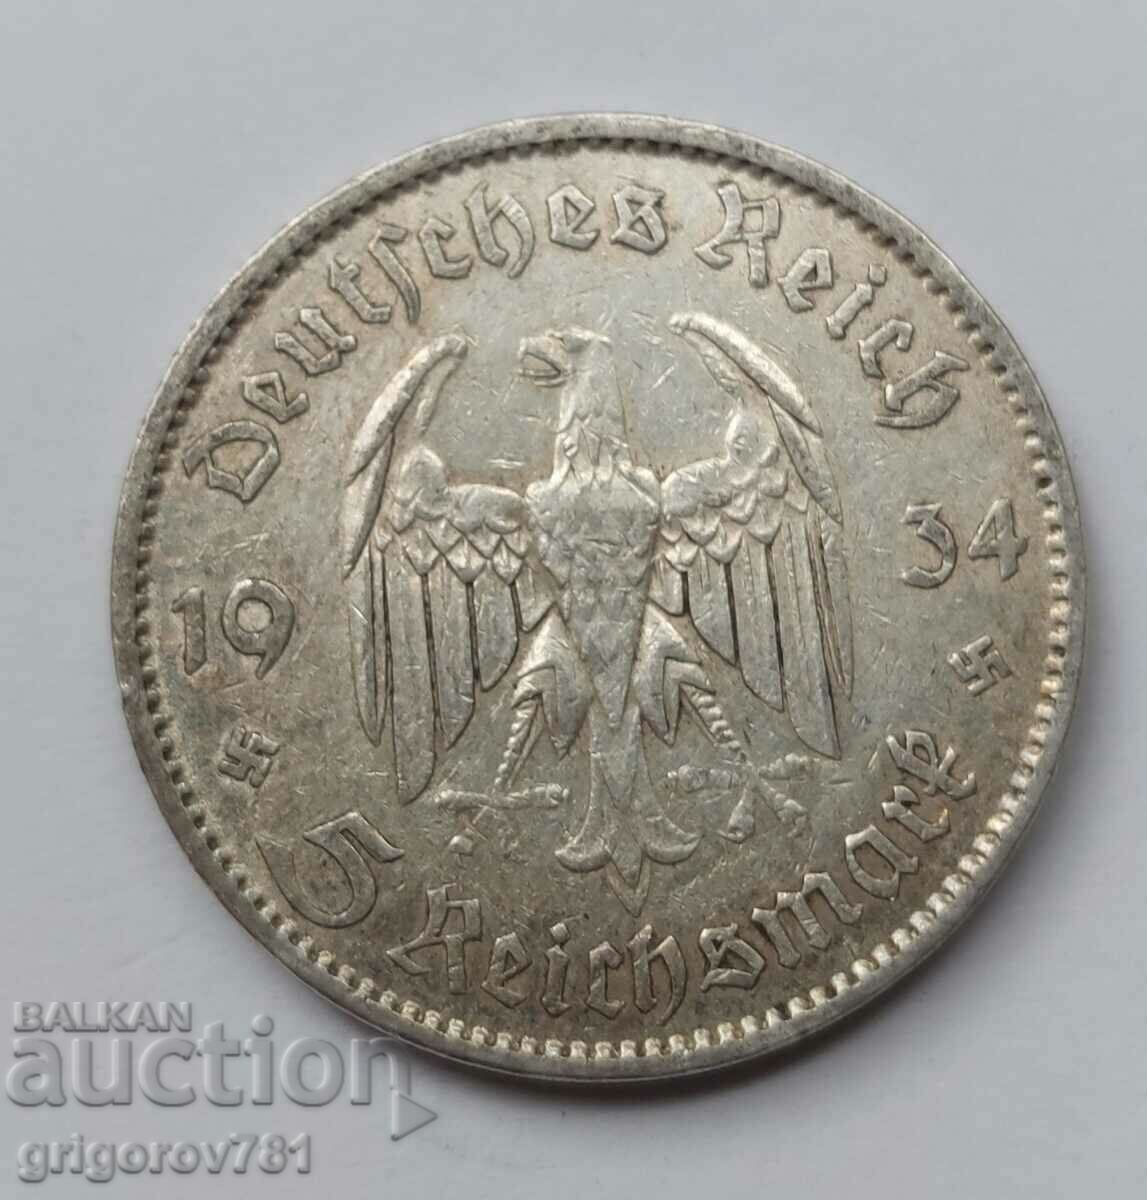 5 Mark Silver Γερμανία 1934 A III Reich Silver Coin #8